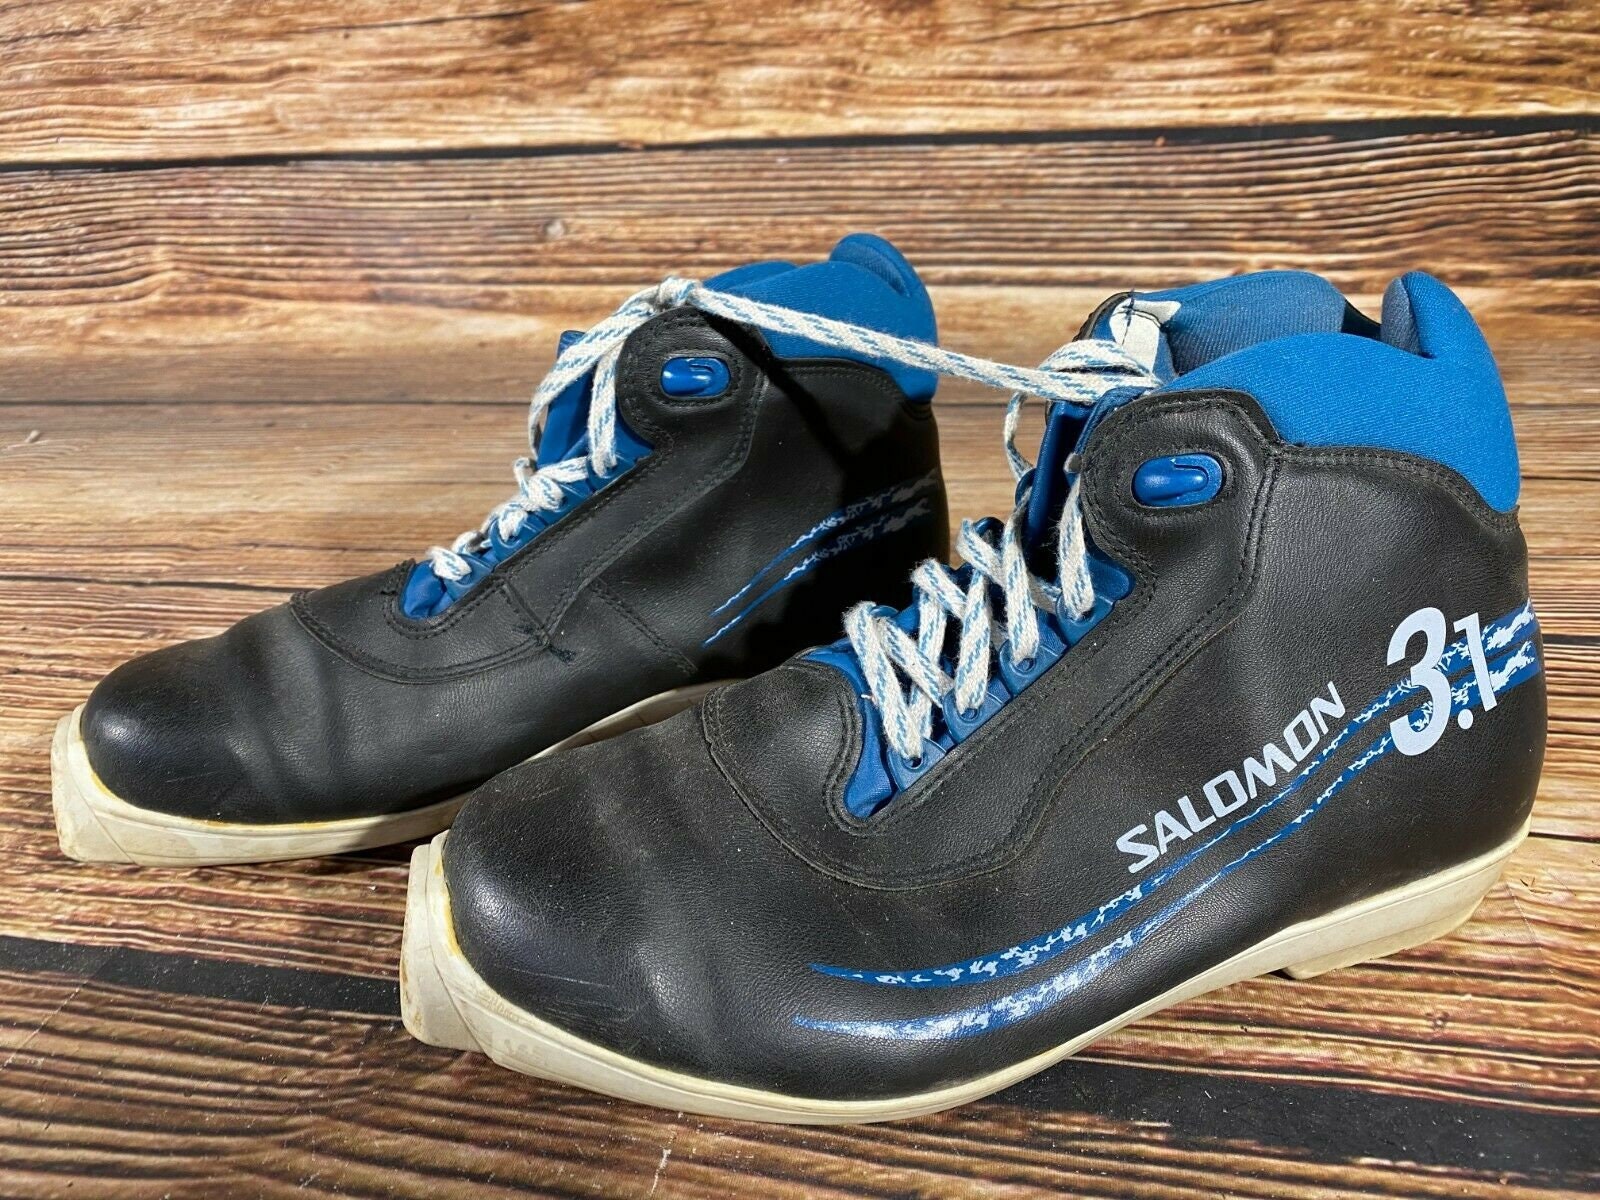 Schoenen Jongensschoenen Laarzen SALOMON Cross Country Skischoenen Maat EU37 1/3 US5 voor SNS Pilot Bindingen 